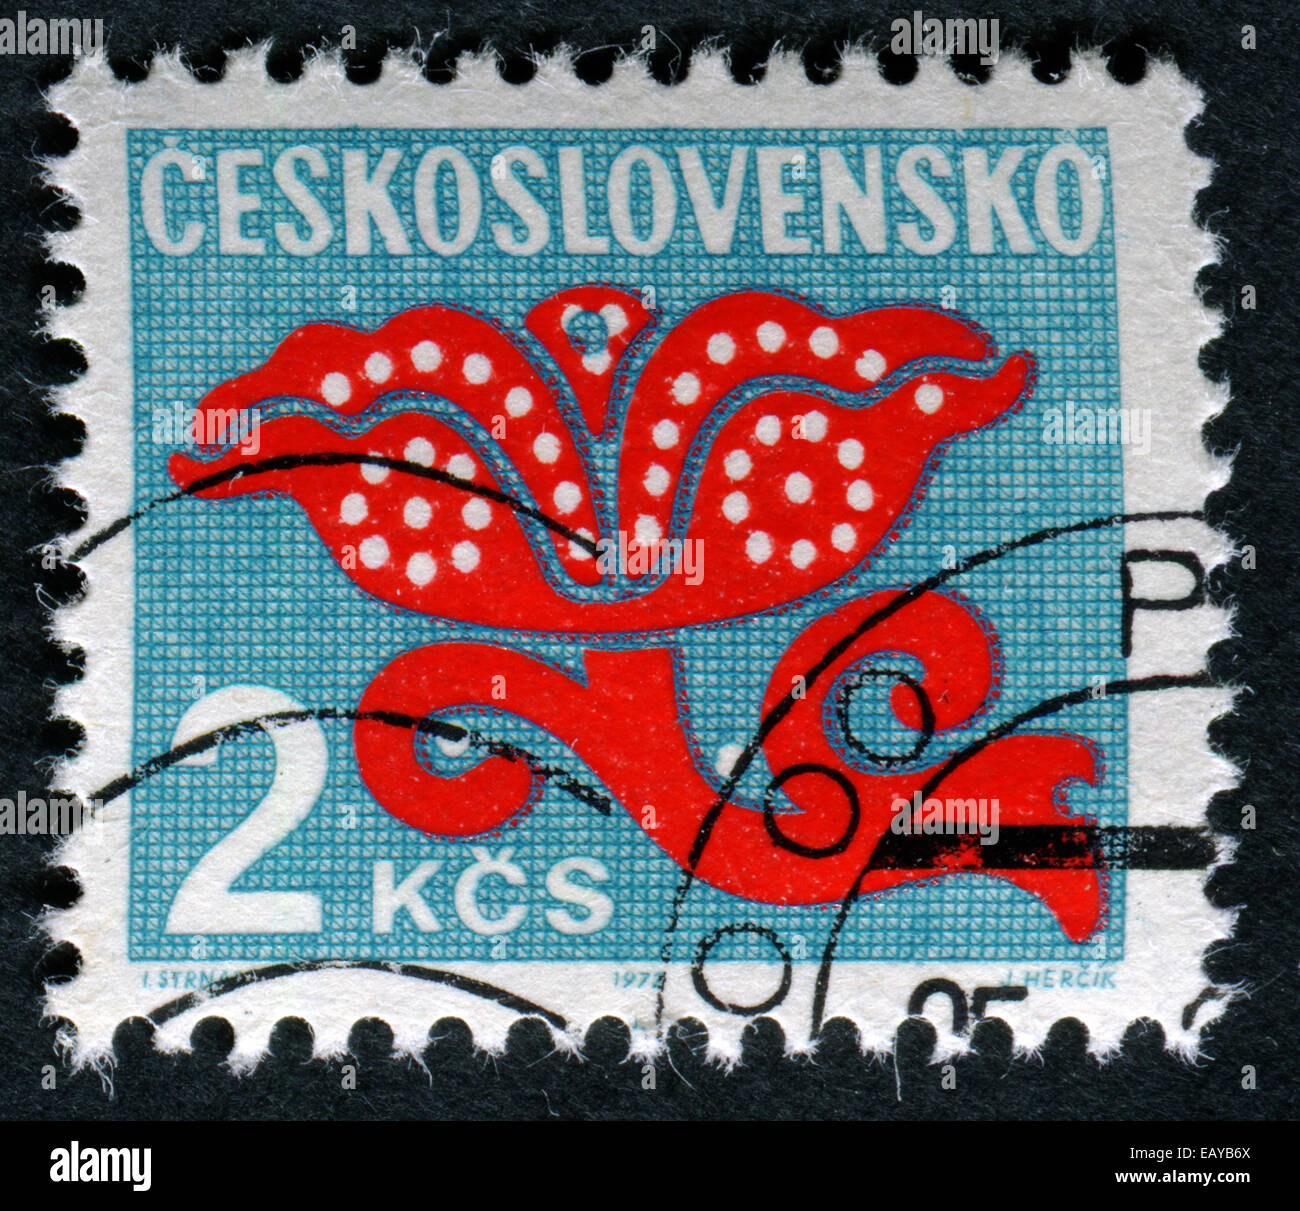 La Tchécoslovaquie - circa 1971 : timbres par la Tchécoslovaquie, montre fleur stylisée, vers 1971 Banque D'Images